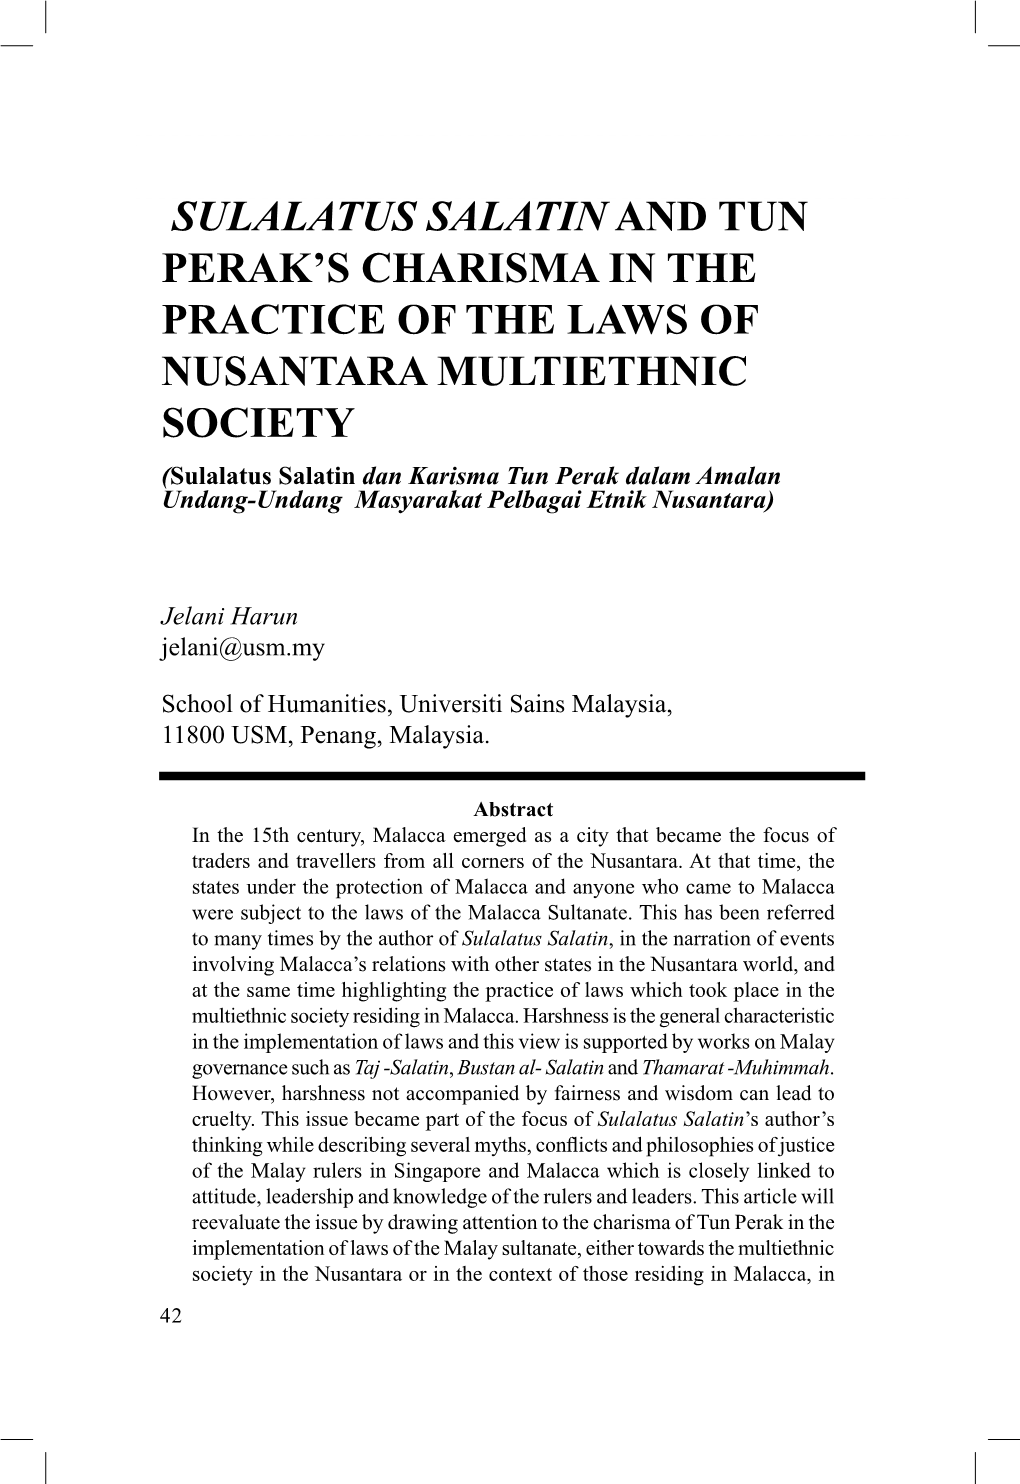 Sulalatus Salatin and Tun Perak's Charisma in The